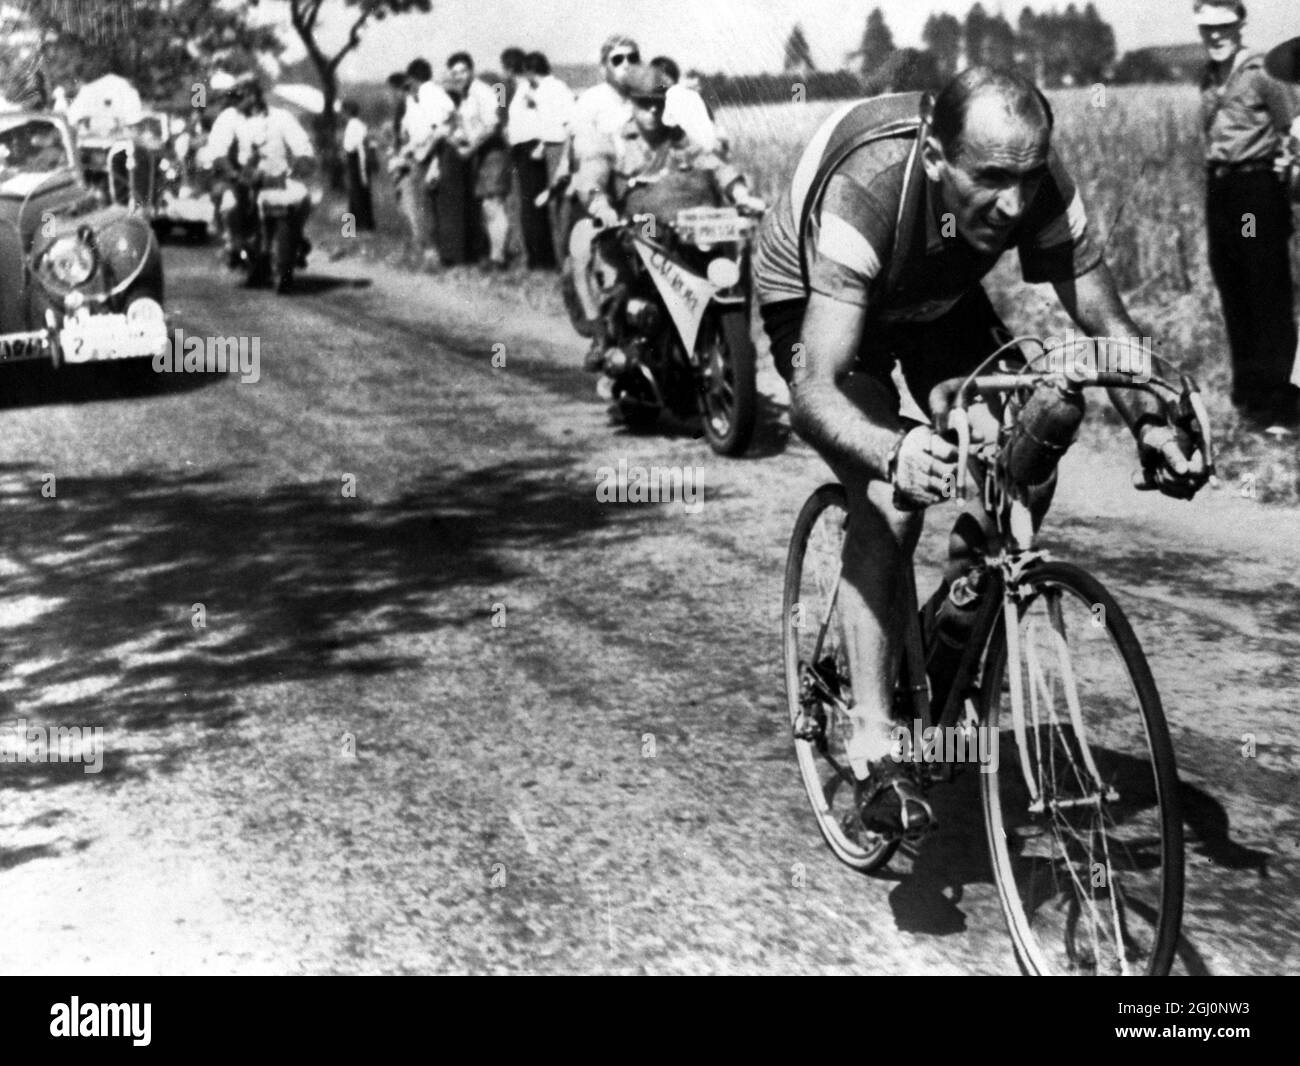 Fiorenzo Magni von Italien während der sechsten Etappe der Tour de France von Namur nach Metz, die er führte. Juli 1952 Stockfoto